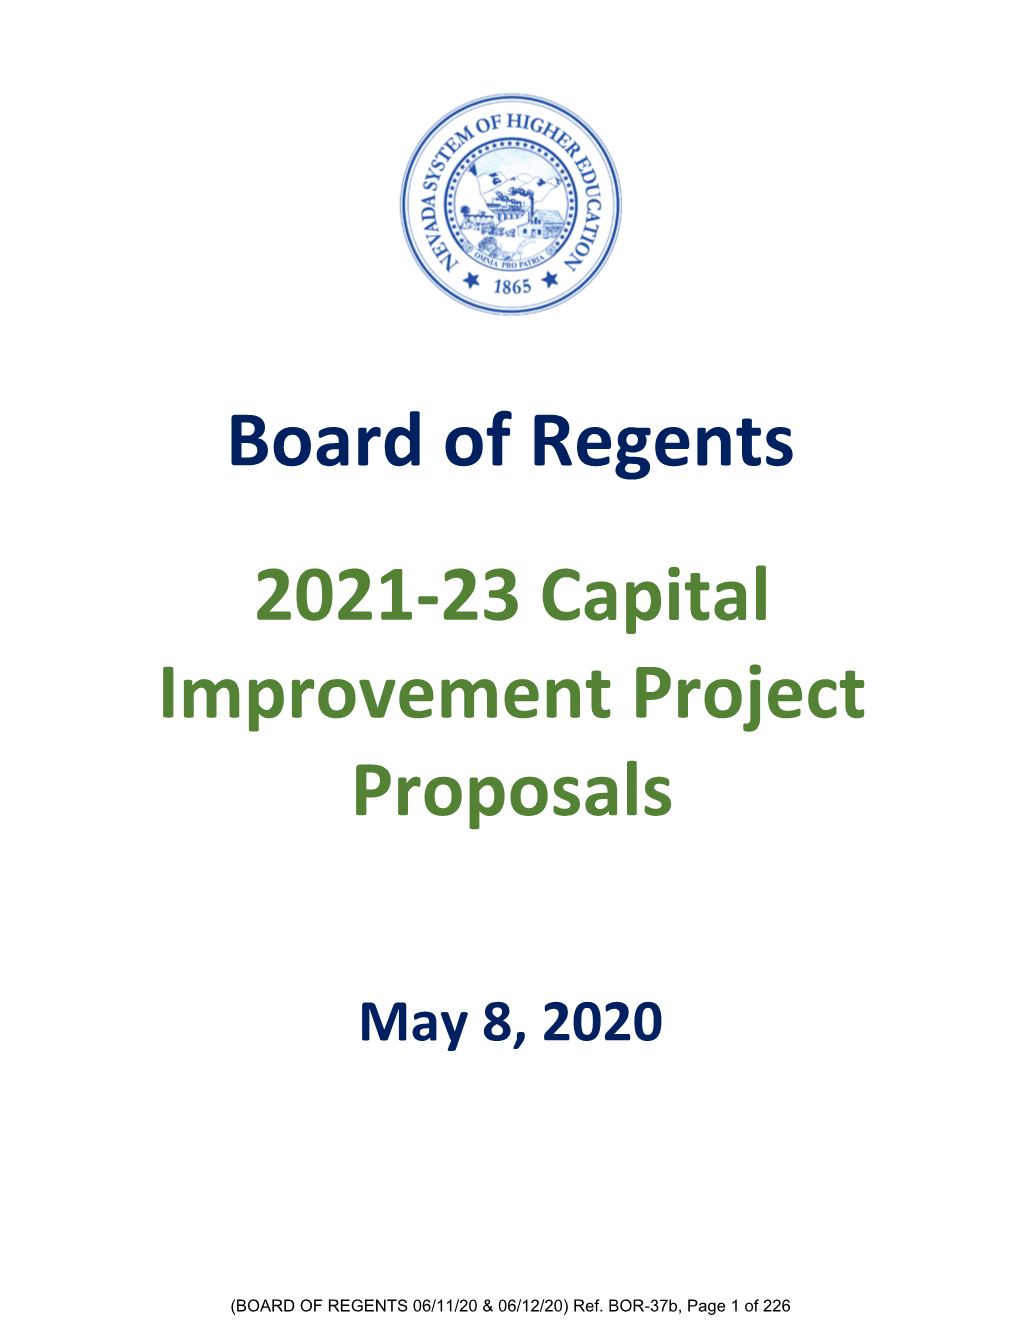 Board of Regents 2021-23 Capital Improvement Project Proposals